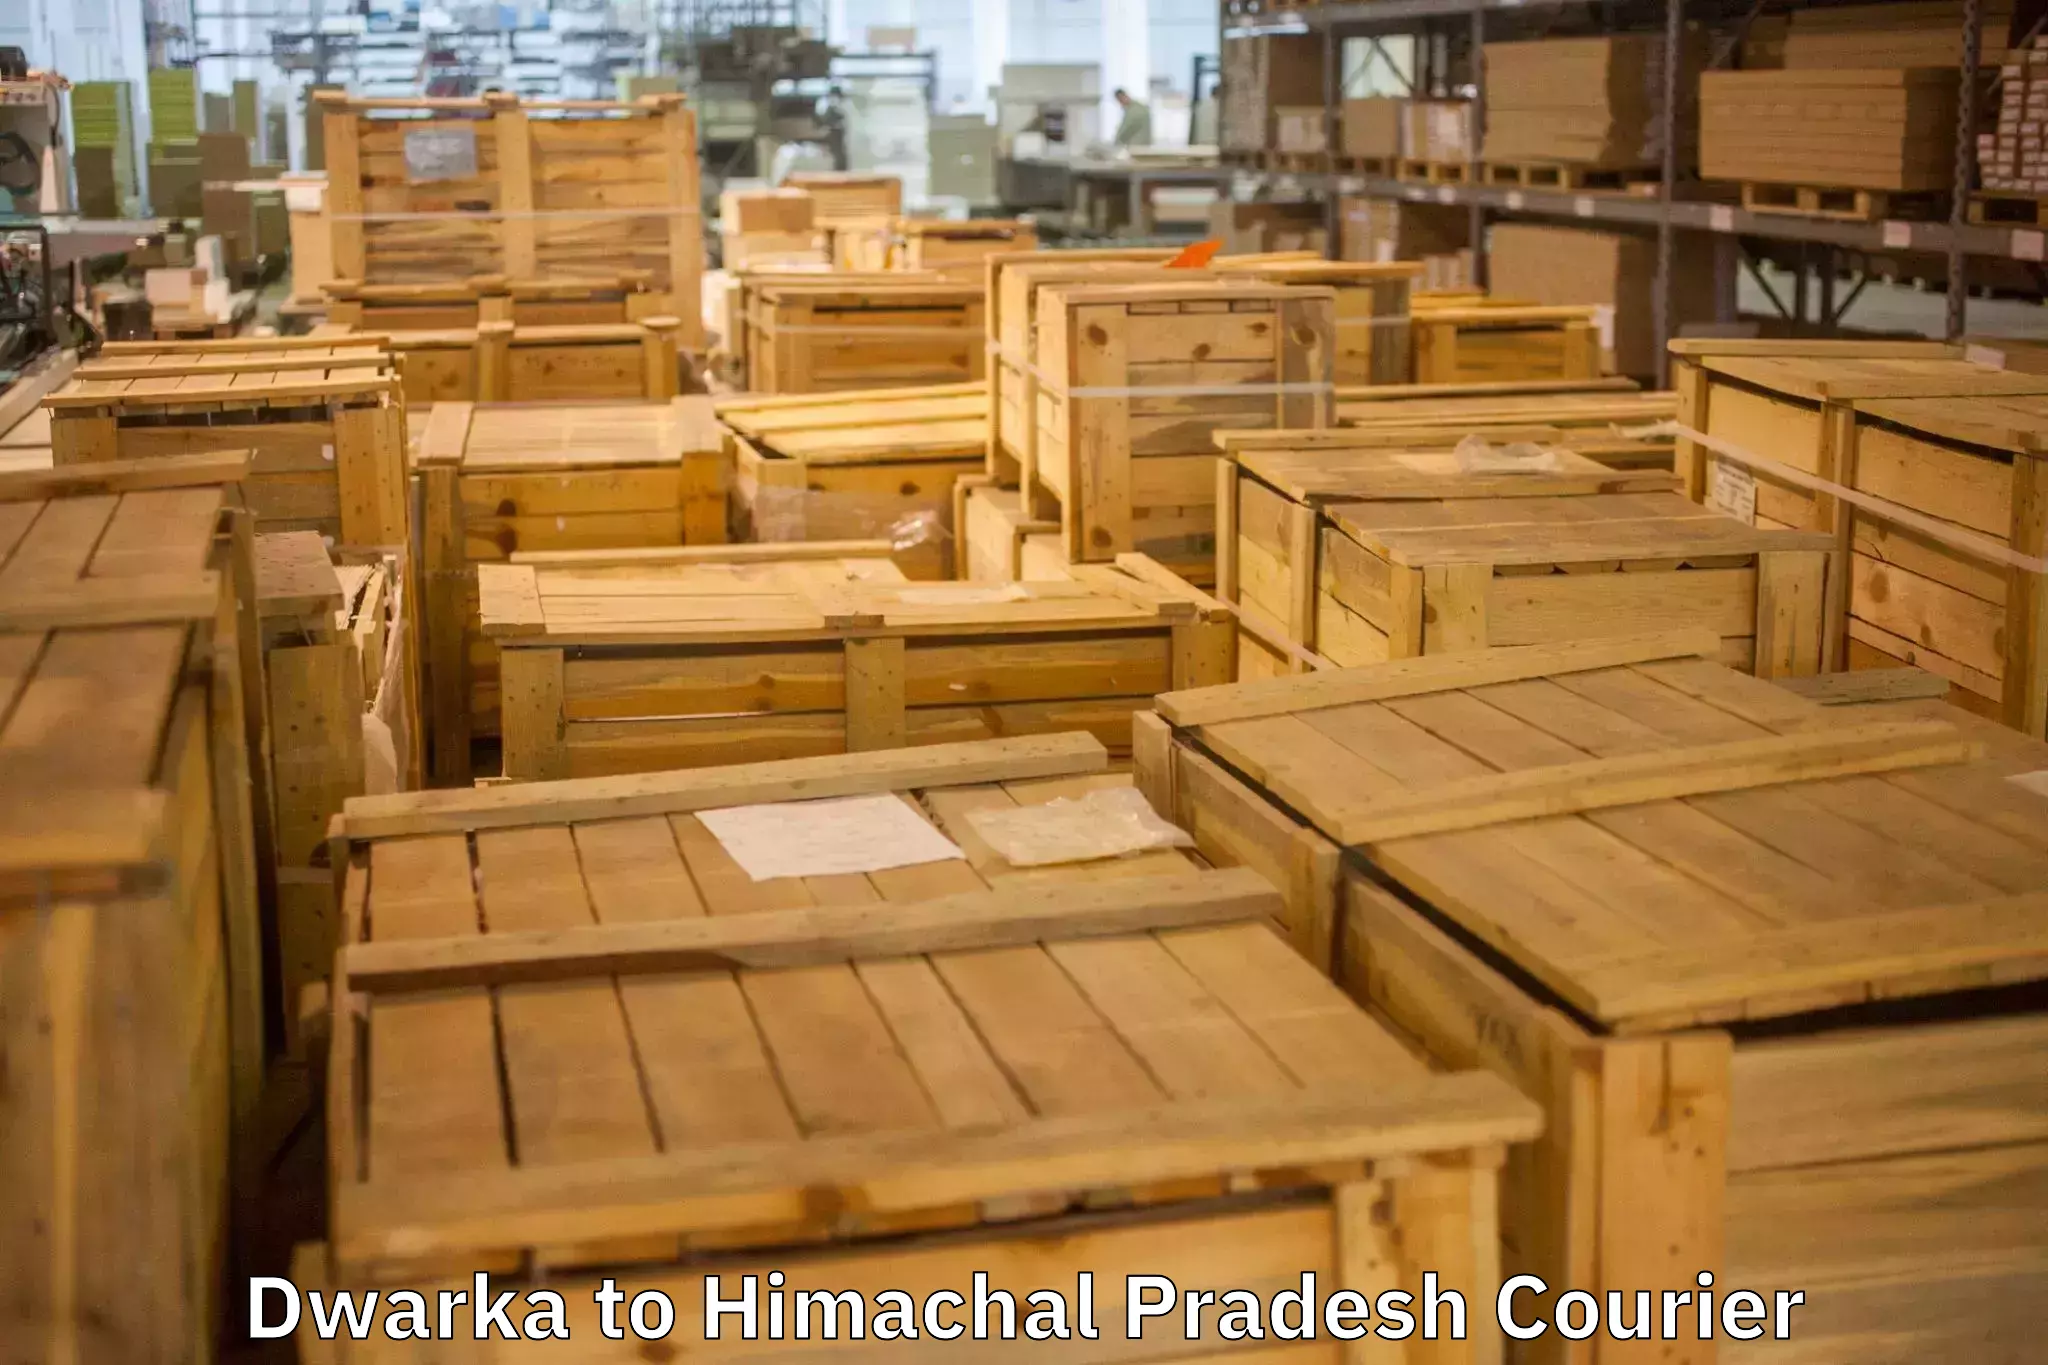 Furniture transport professionals Dwarka to Una